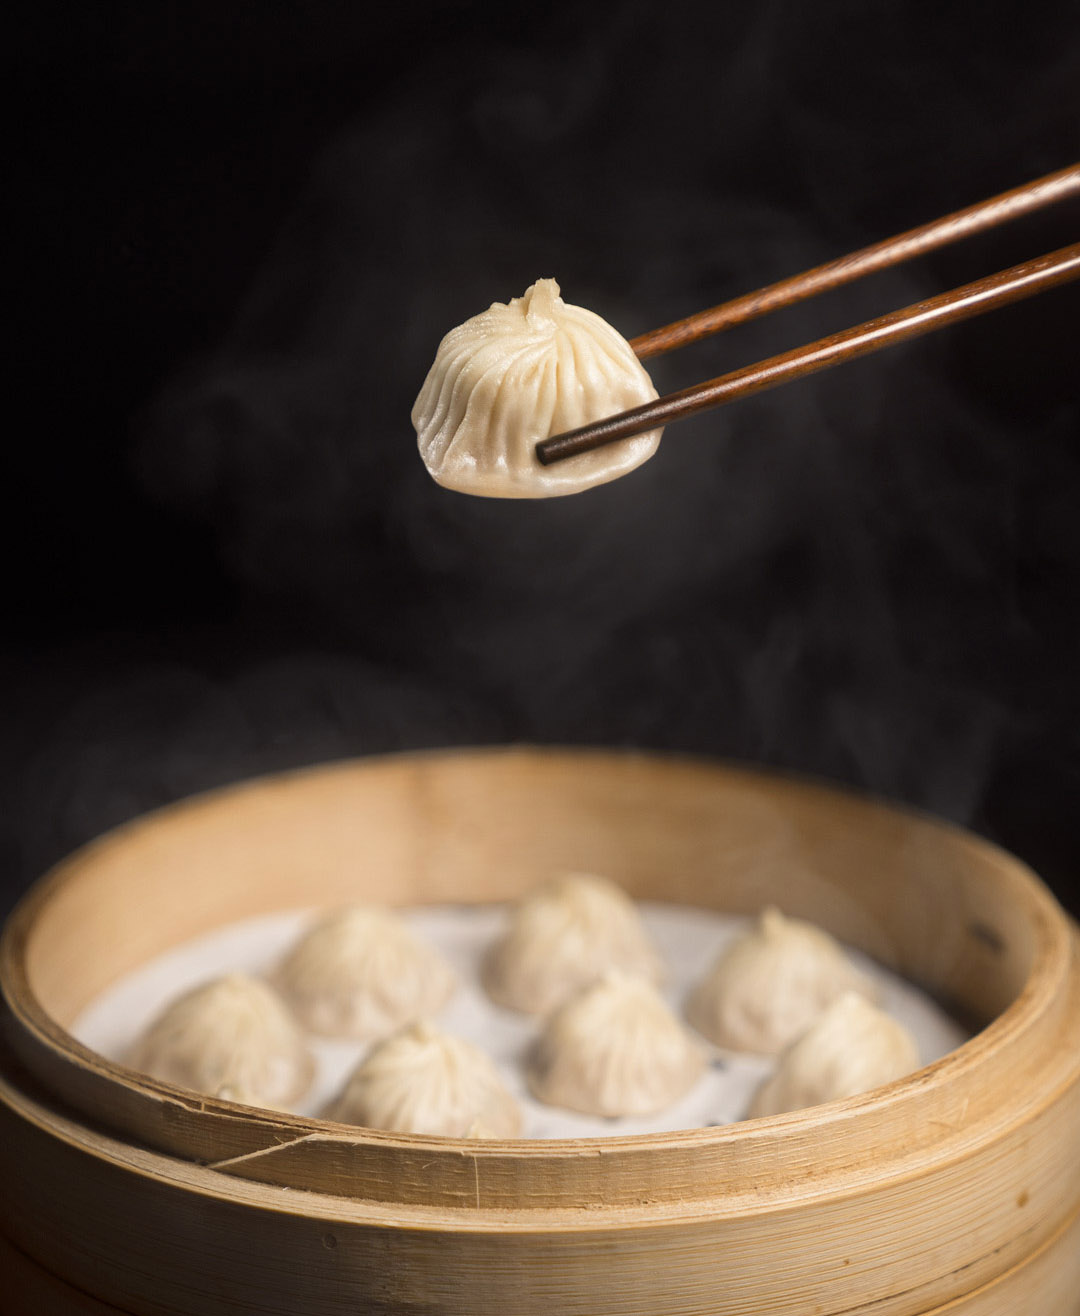 Dumplings in bowl with dumpling on chopsticks